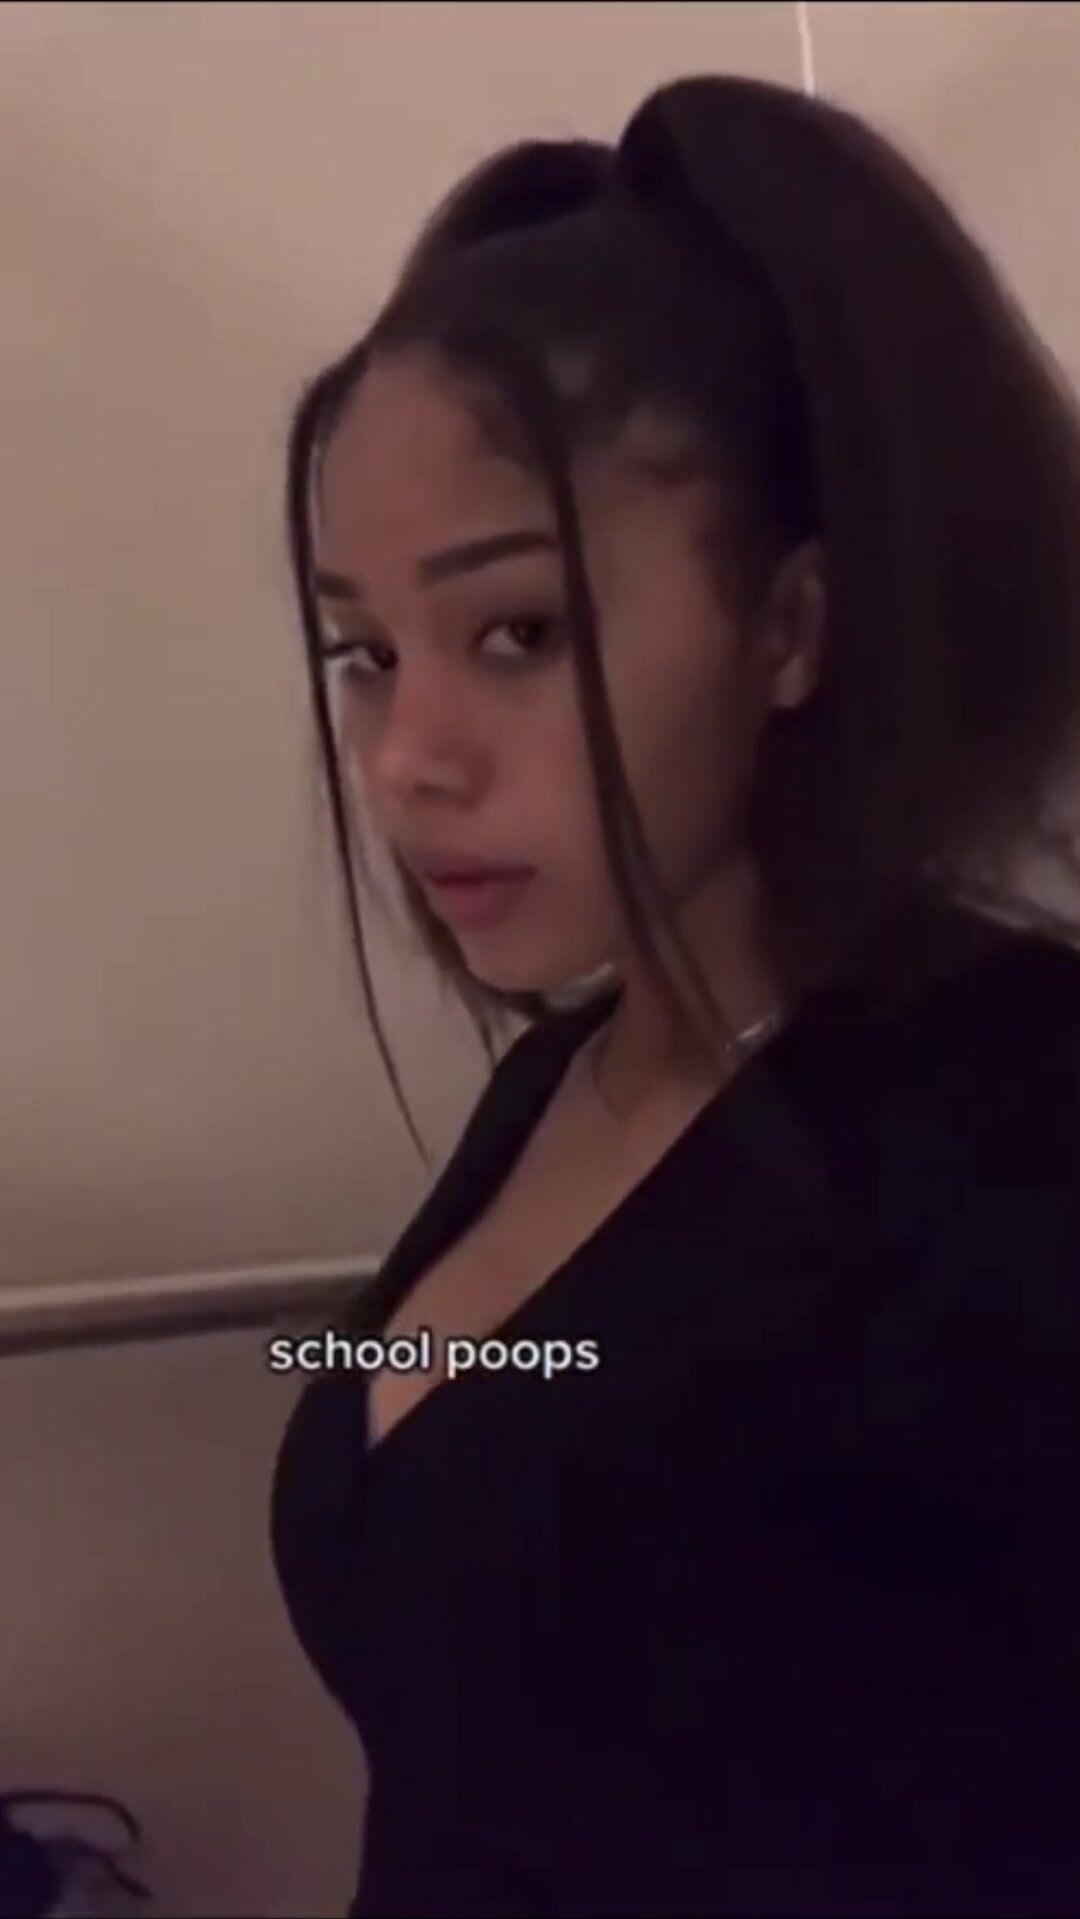 School poops